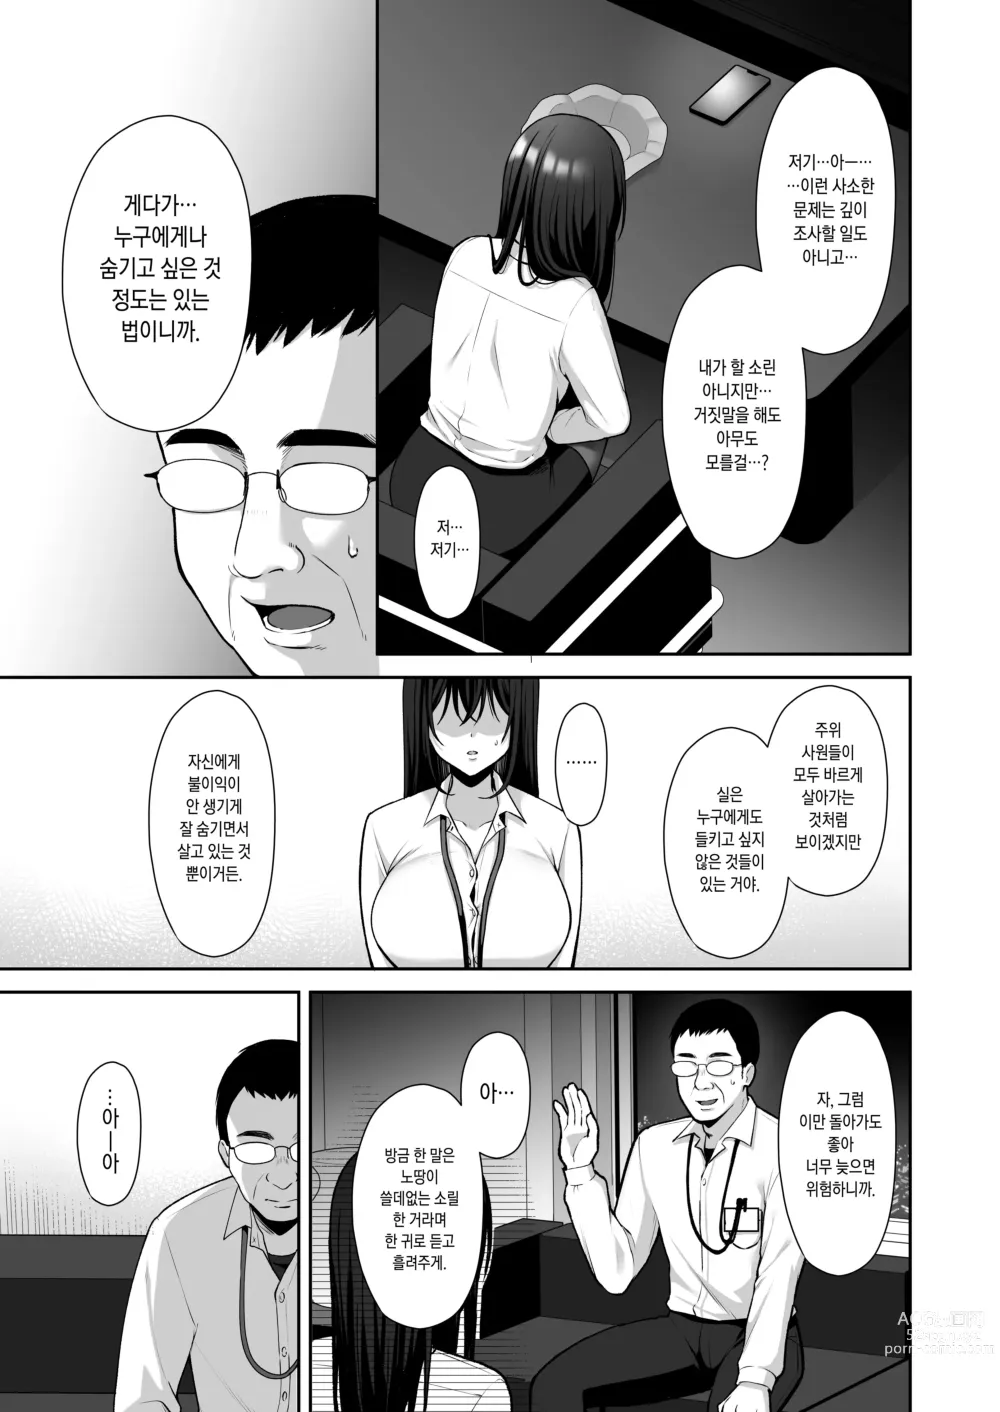 Page 9 of doujinshi 물거품 ~뒷계정 씹마조 파견 OL 오나홀조교~ 총집편